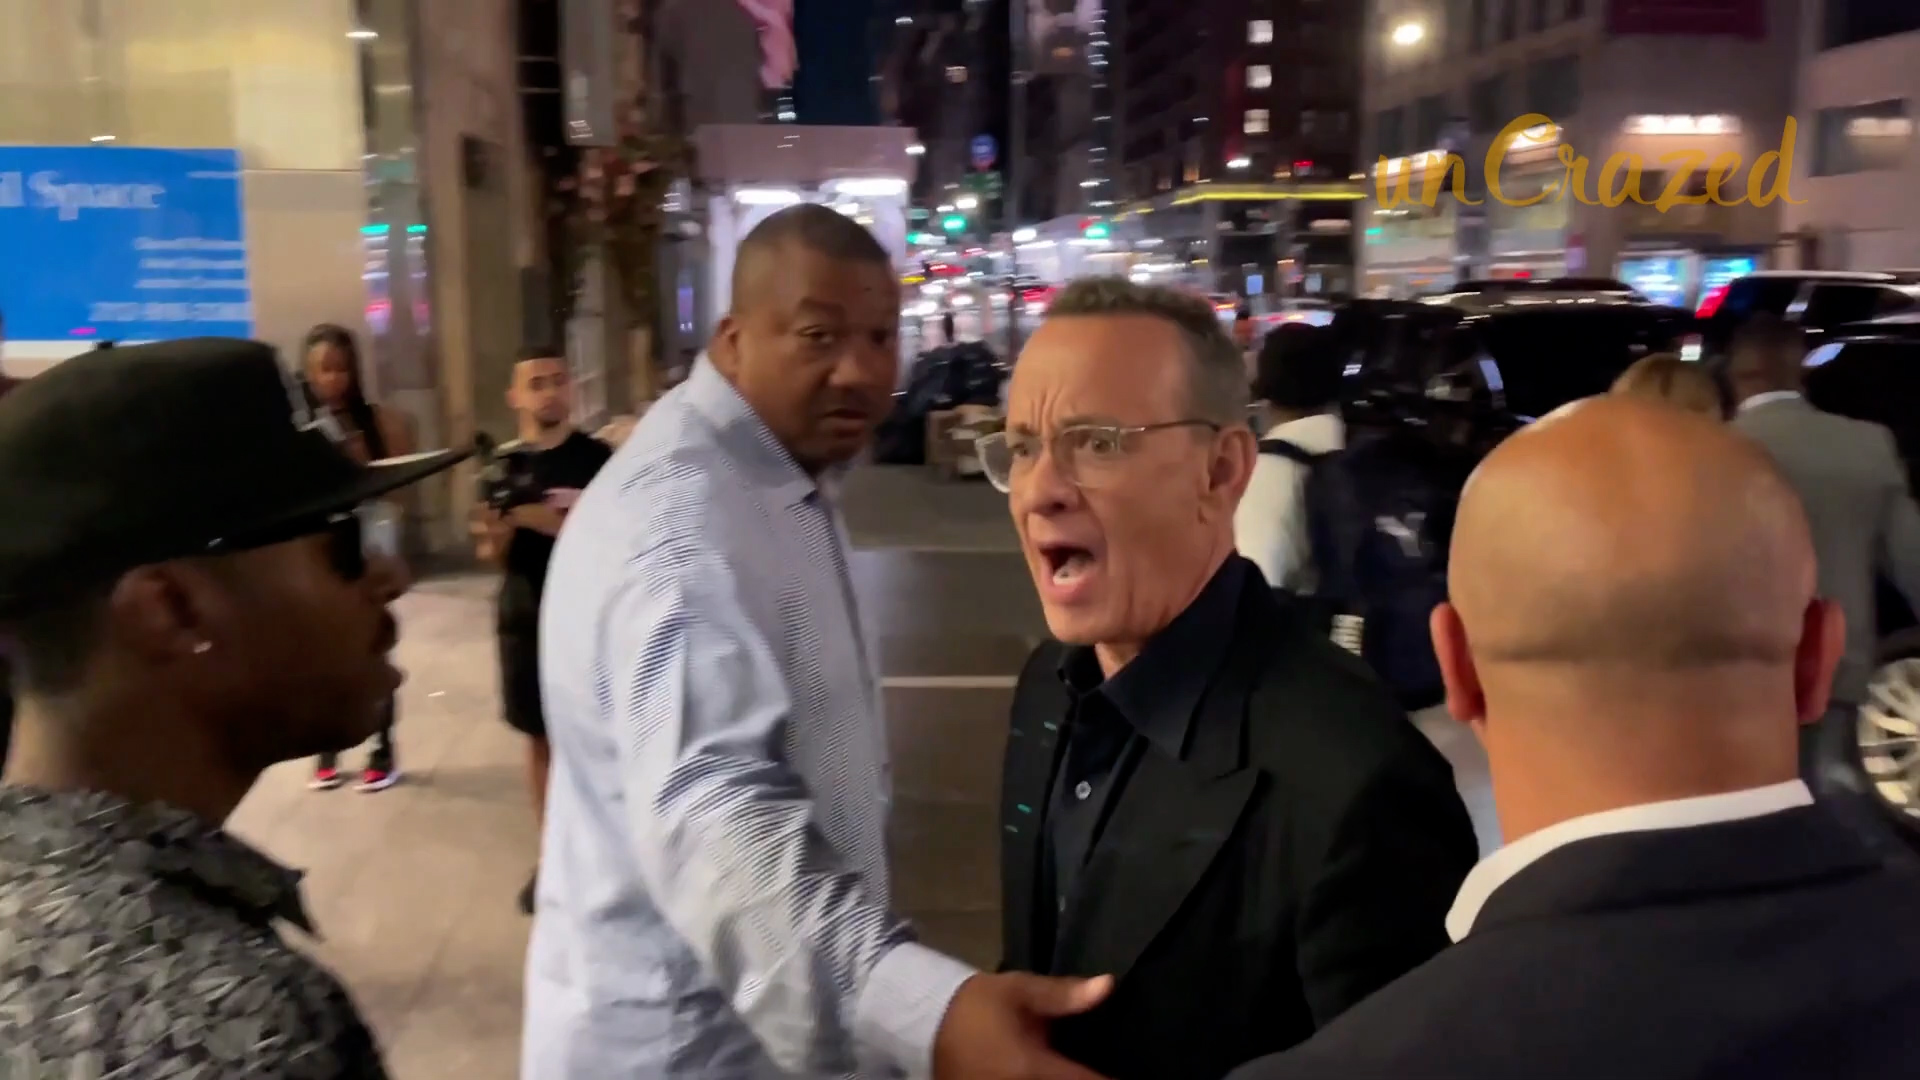 El actor Tom Hanks le grita furiosamente a un fanático que golpeó accidentalmente a su esposa.